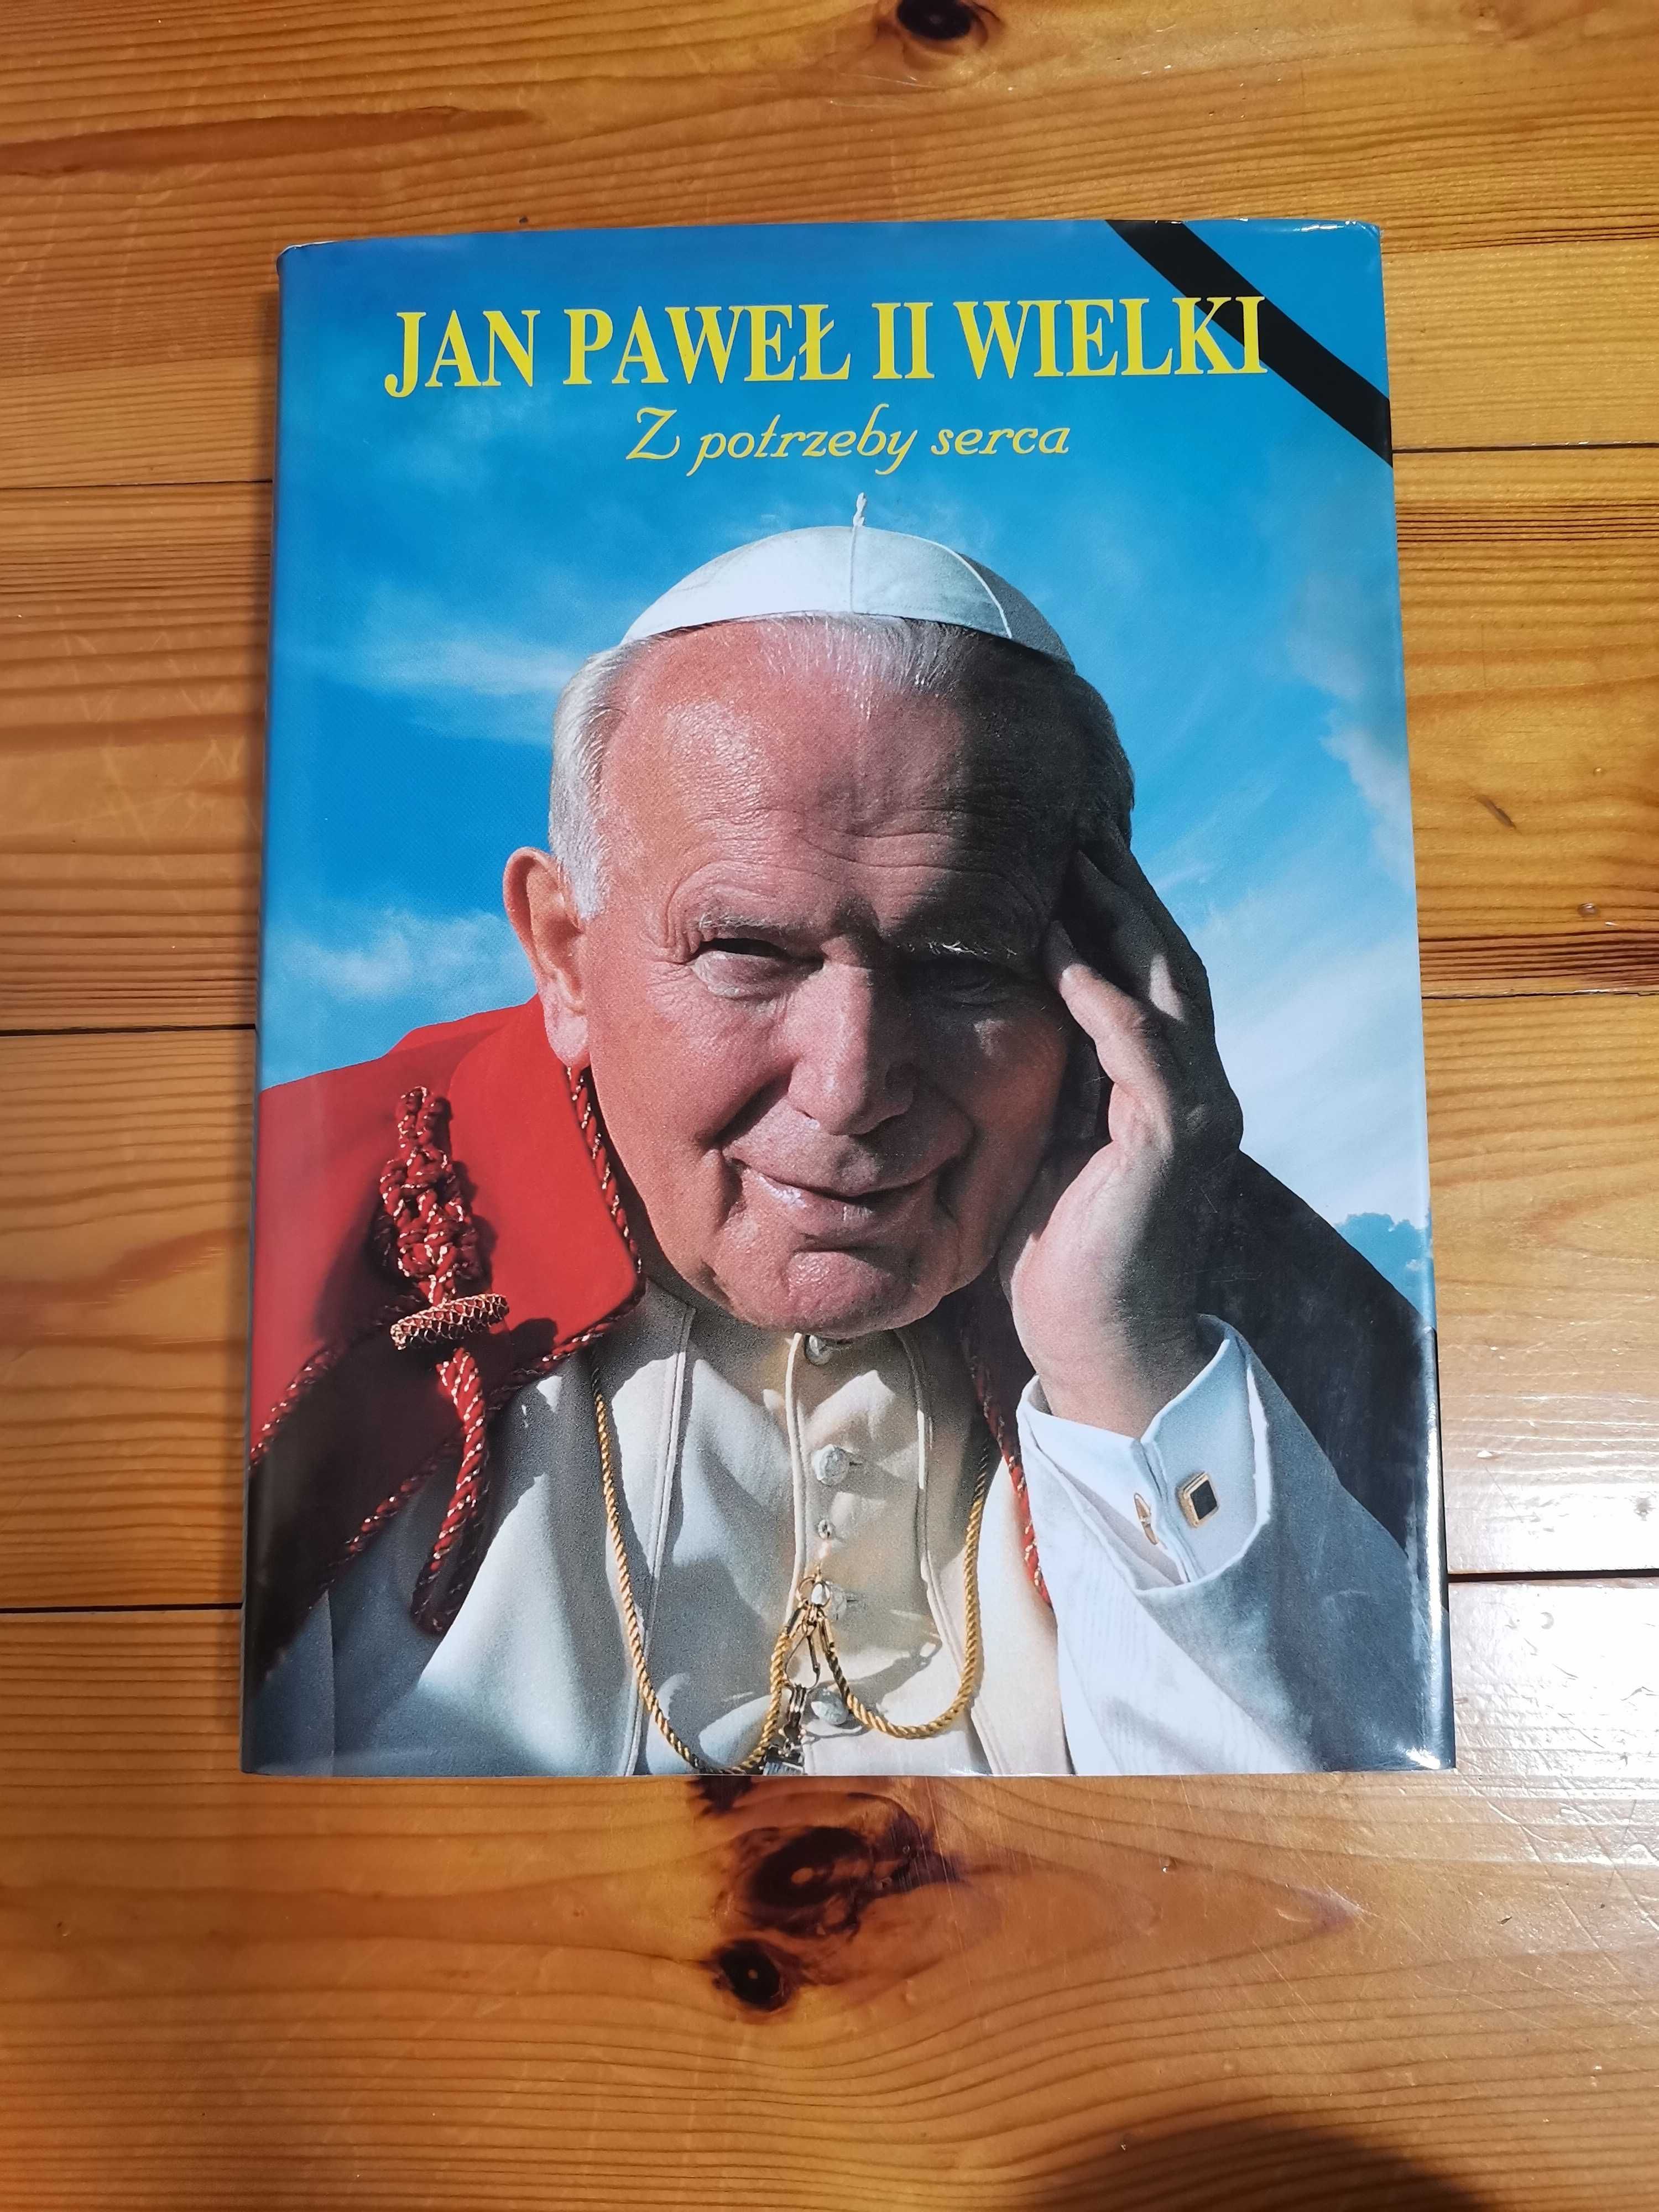 Album Jan Paweł II WIELKI   Ks. J. Górny